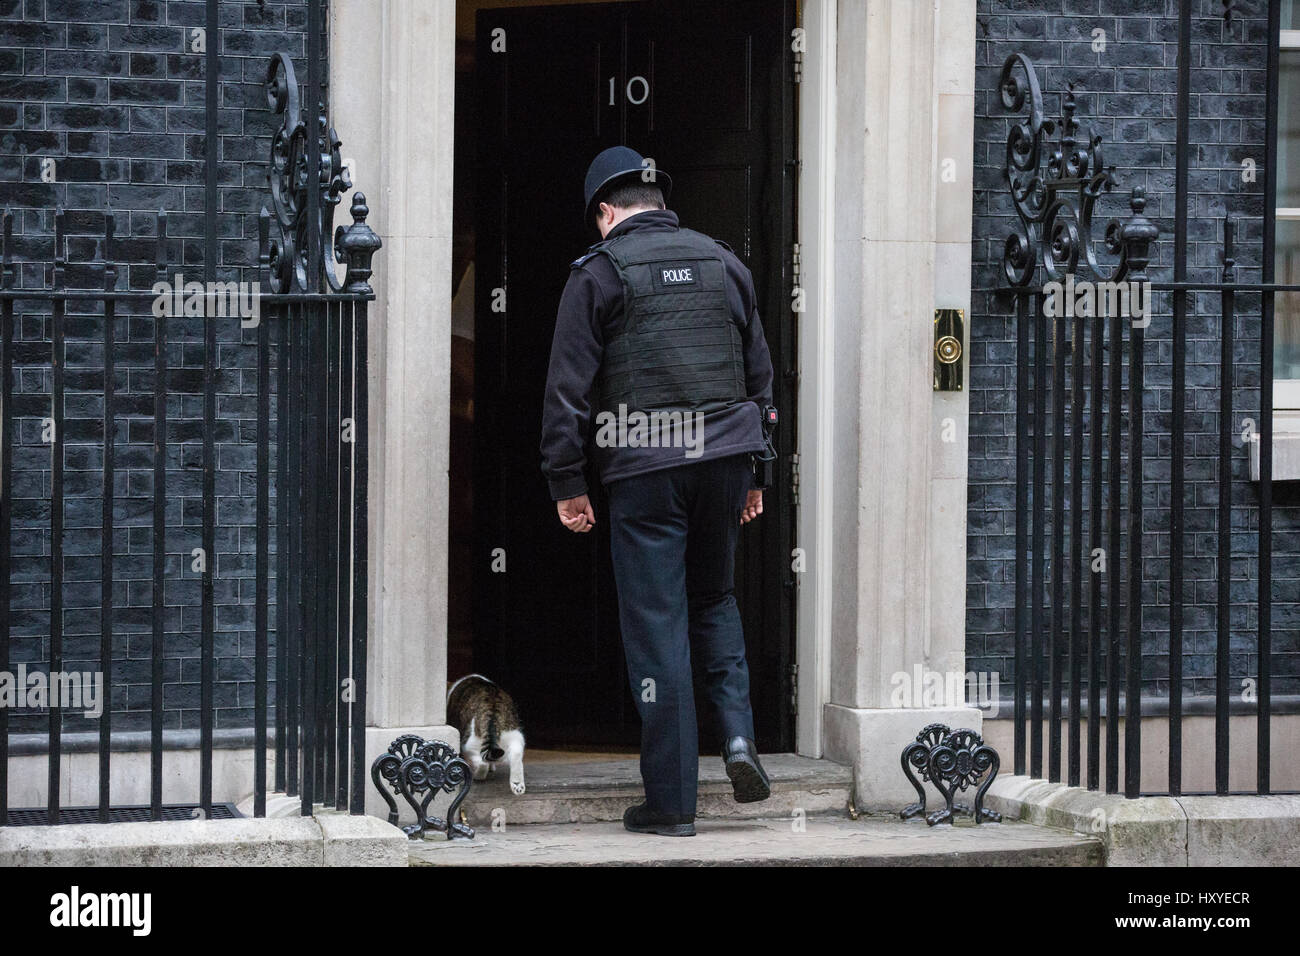 Londra, Regno Unito. Il 30 marzo, 2017. Un funzionario di polizia consente a Larry, Chief Mouser al Cabinet Office, in 10 di Downing Street. Foto Stock